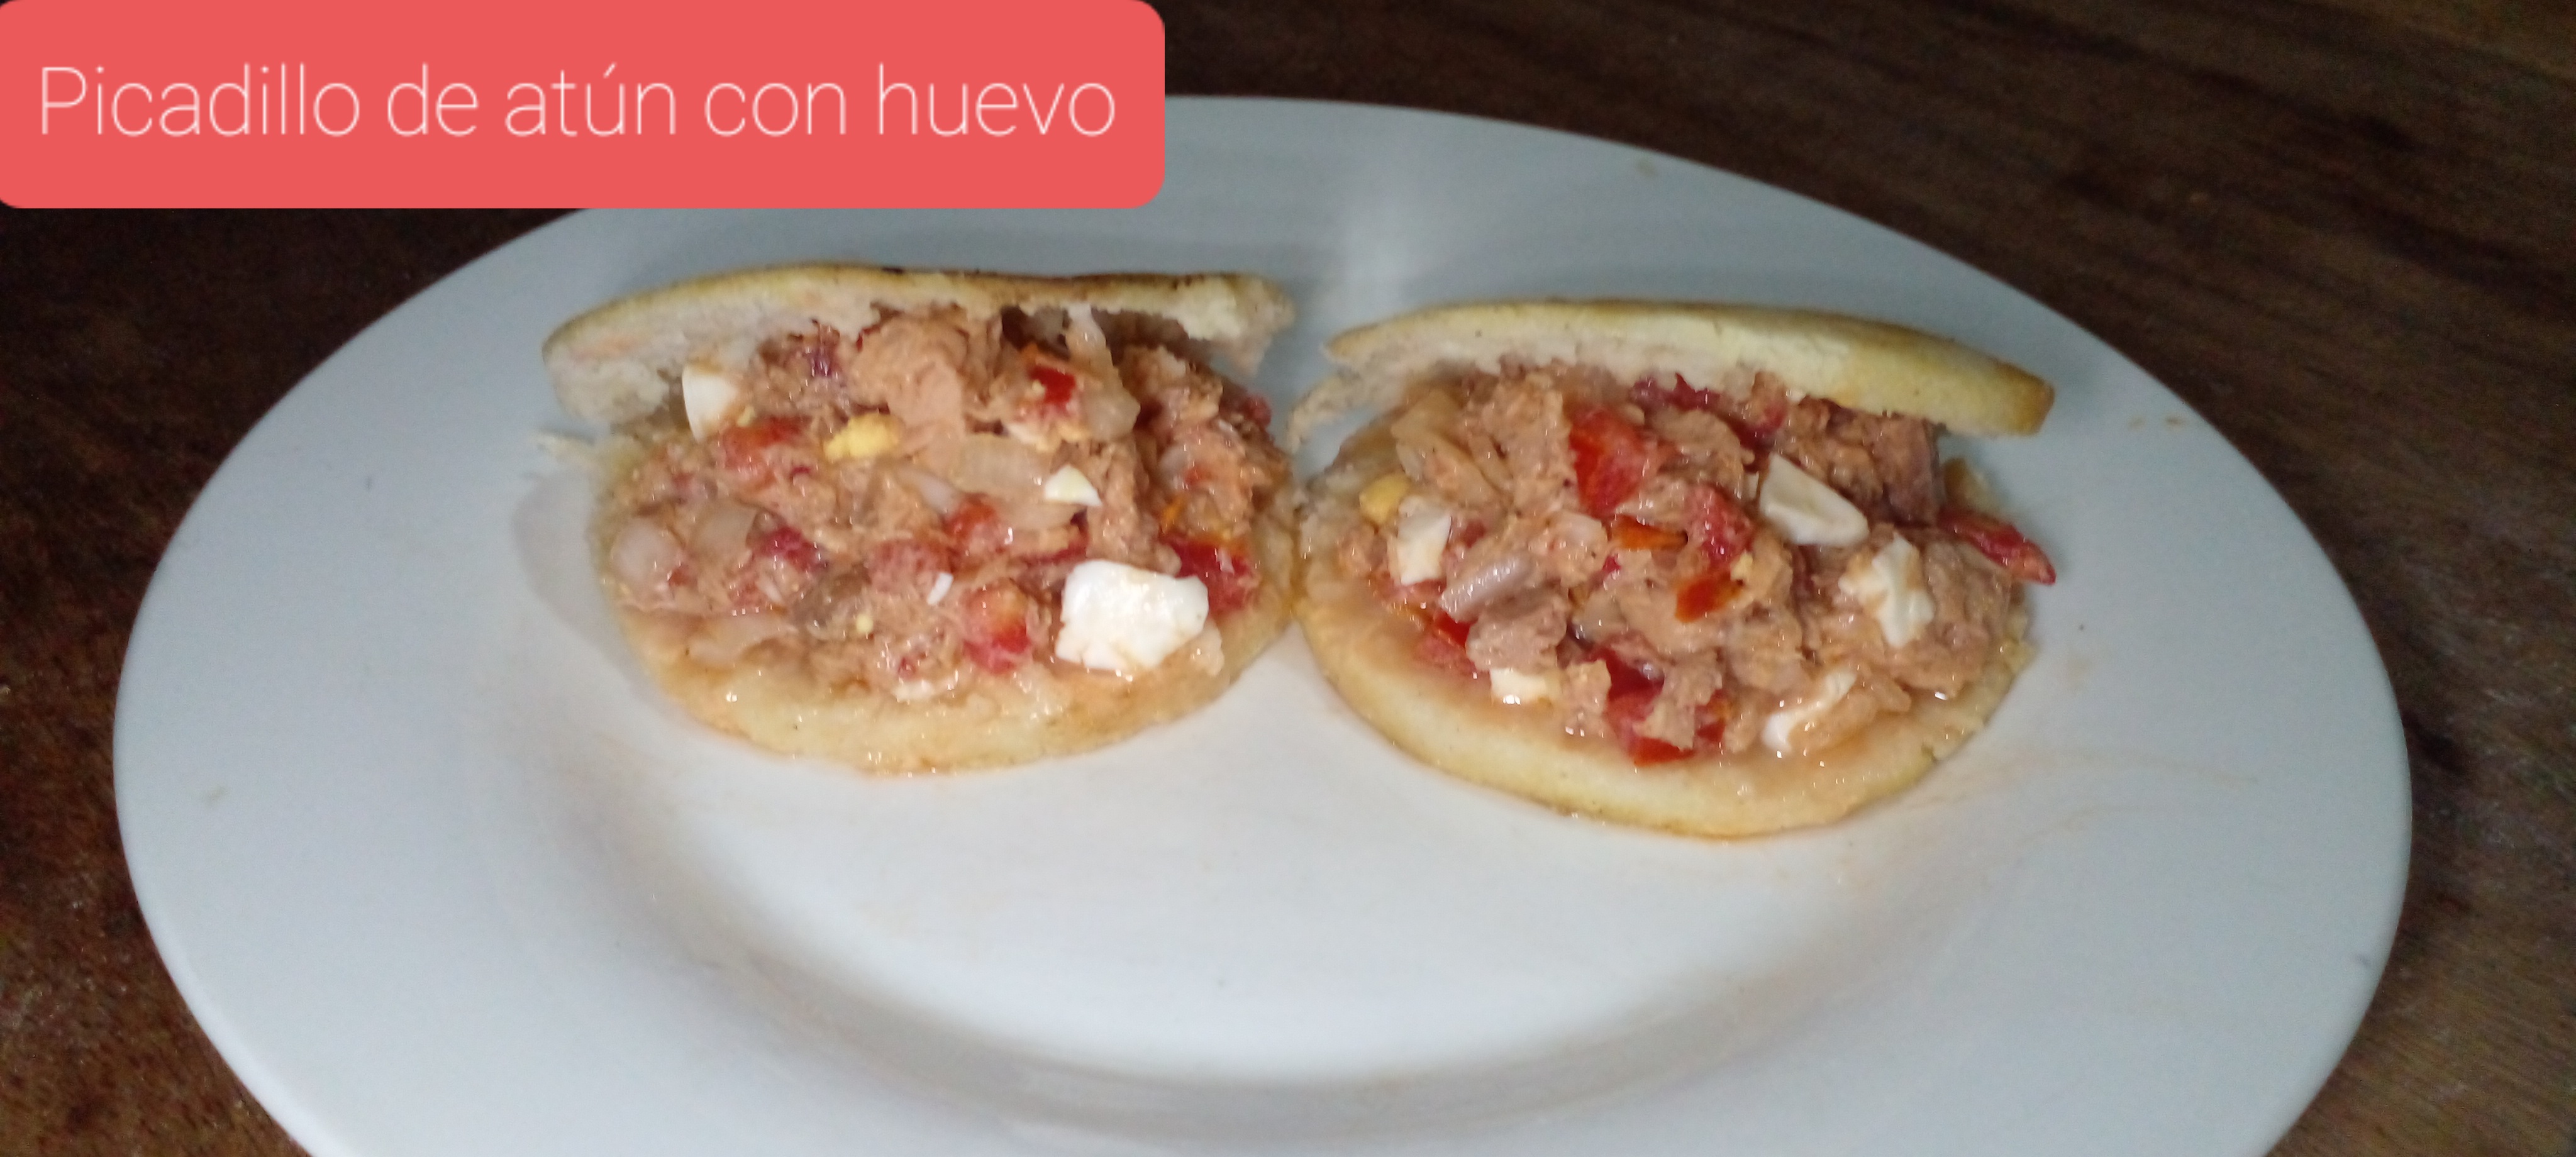 Picadillo de atún con huevo/Tuna and egg picadillo🍲 — Hive